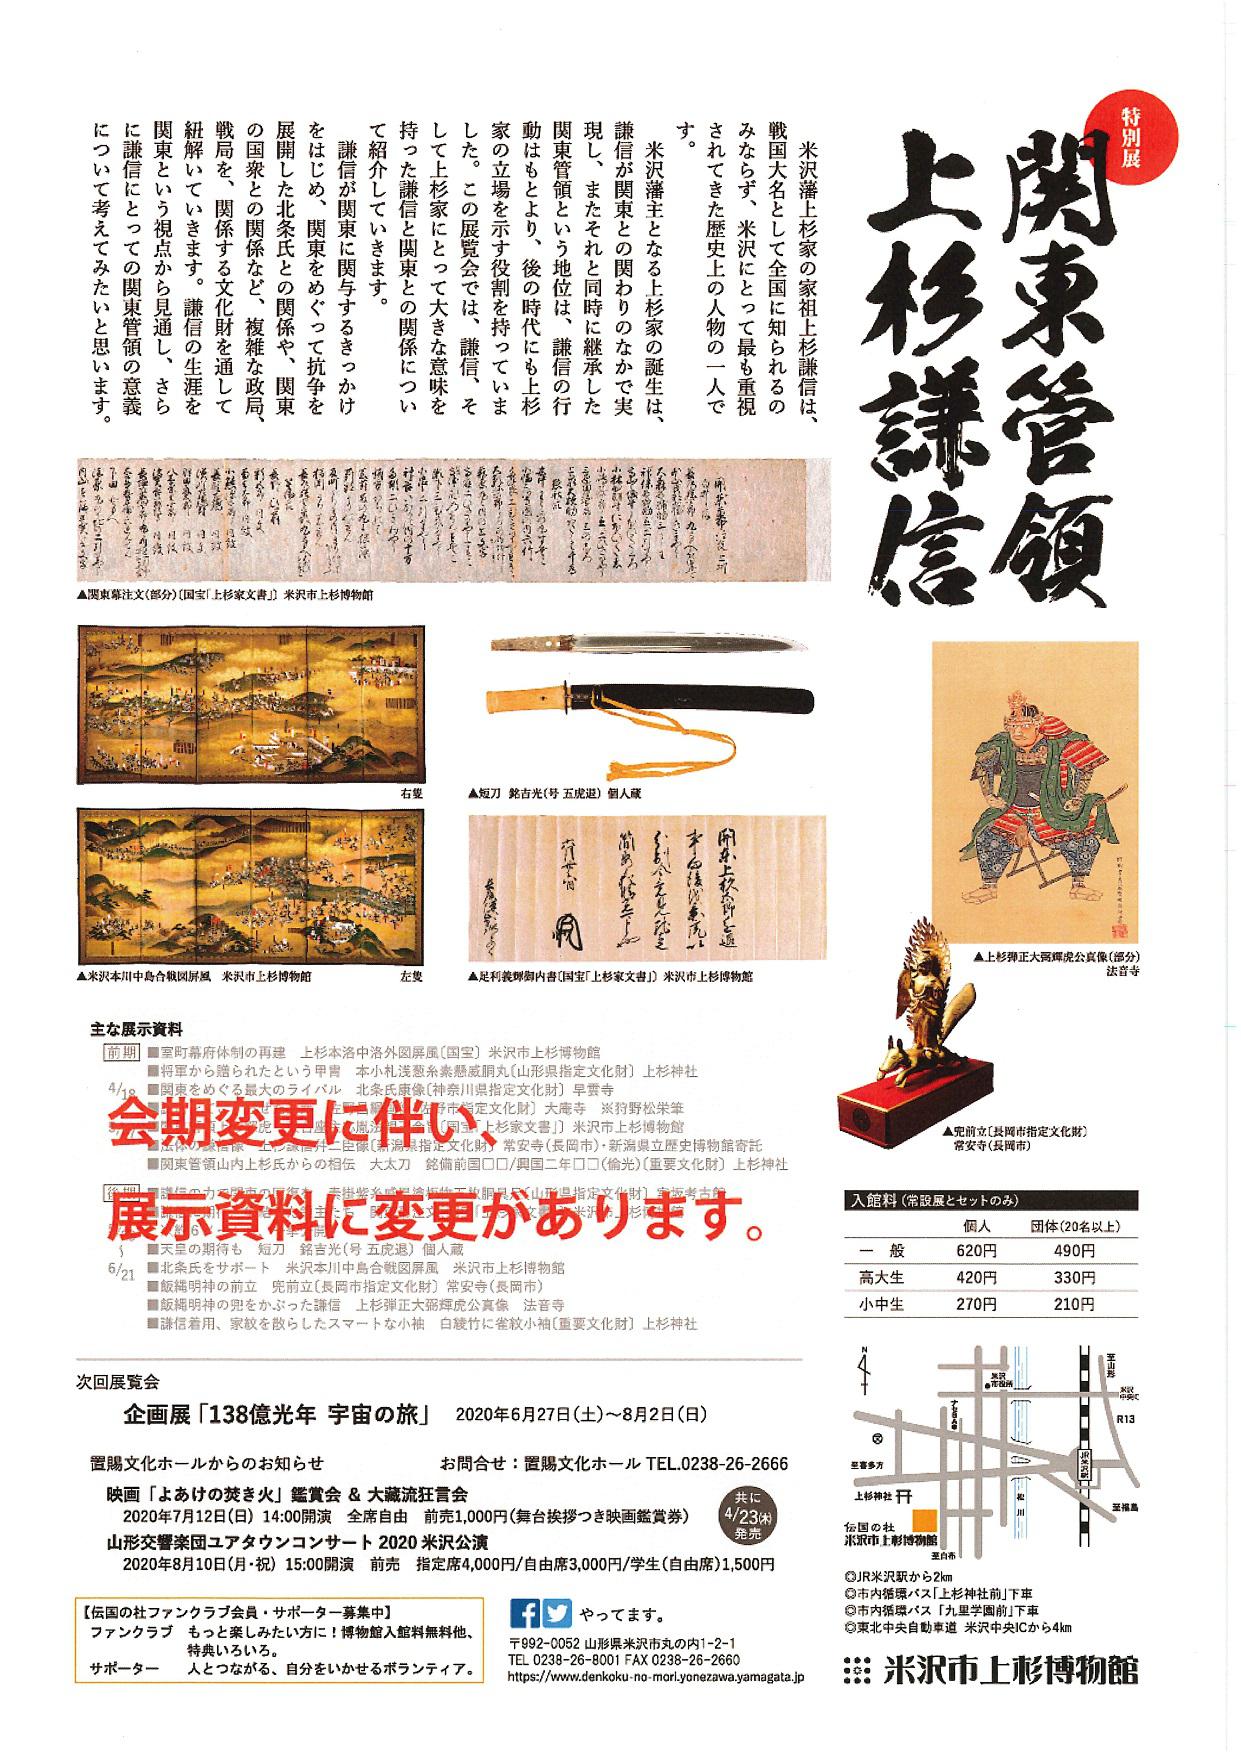 Uesugi Museum Special Exhibition - “Kanto Kanrei: Uesugi Kenshin”